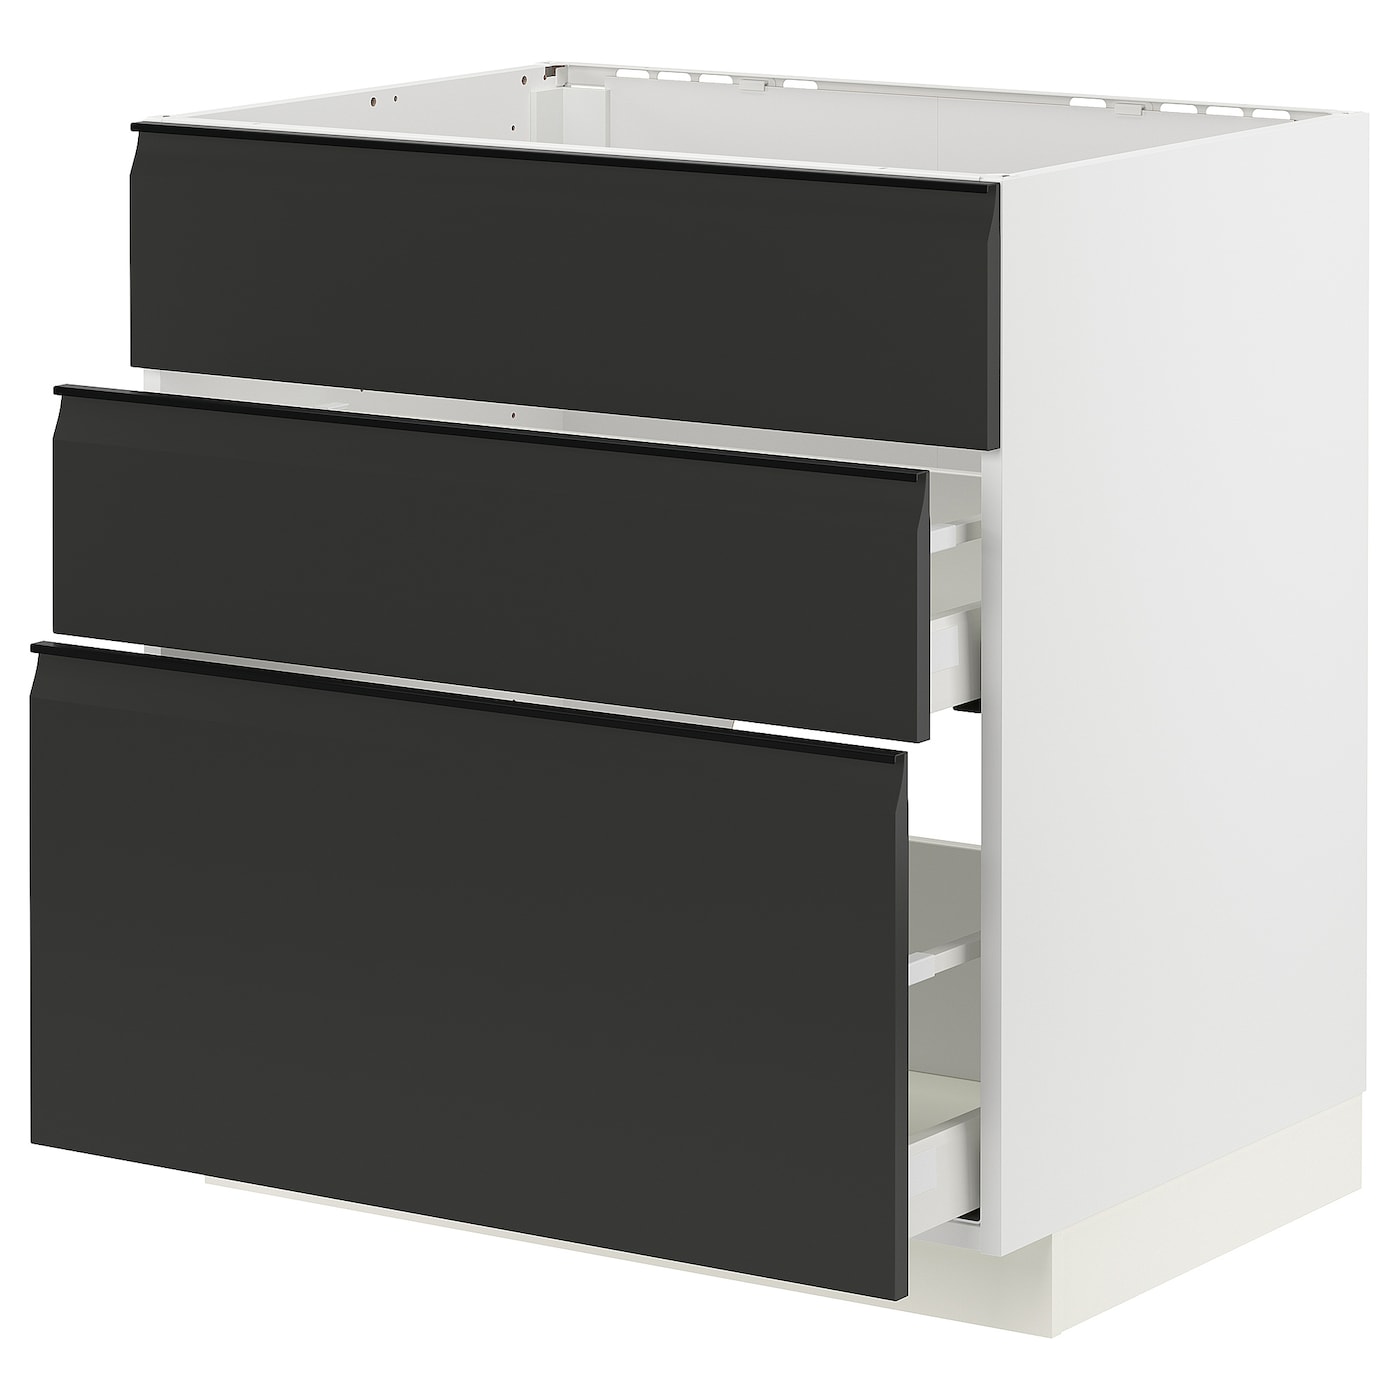 Напольный кухонный шкаф  - IKEA METOD MAXIMERA, 88x61,6x80см, белый/черный, МЕТОД МАКСИМЕРА ИКЕА